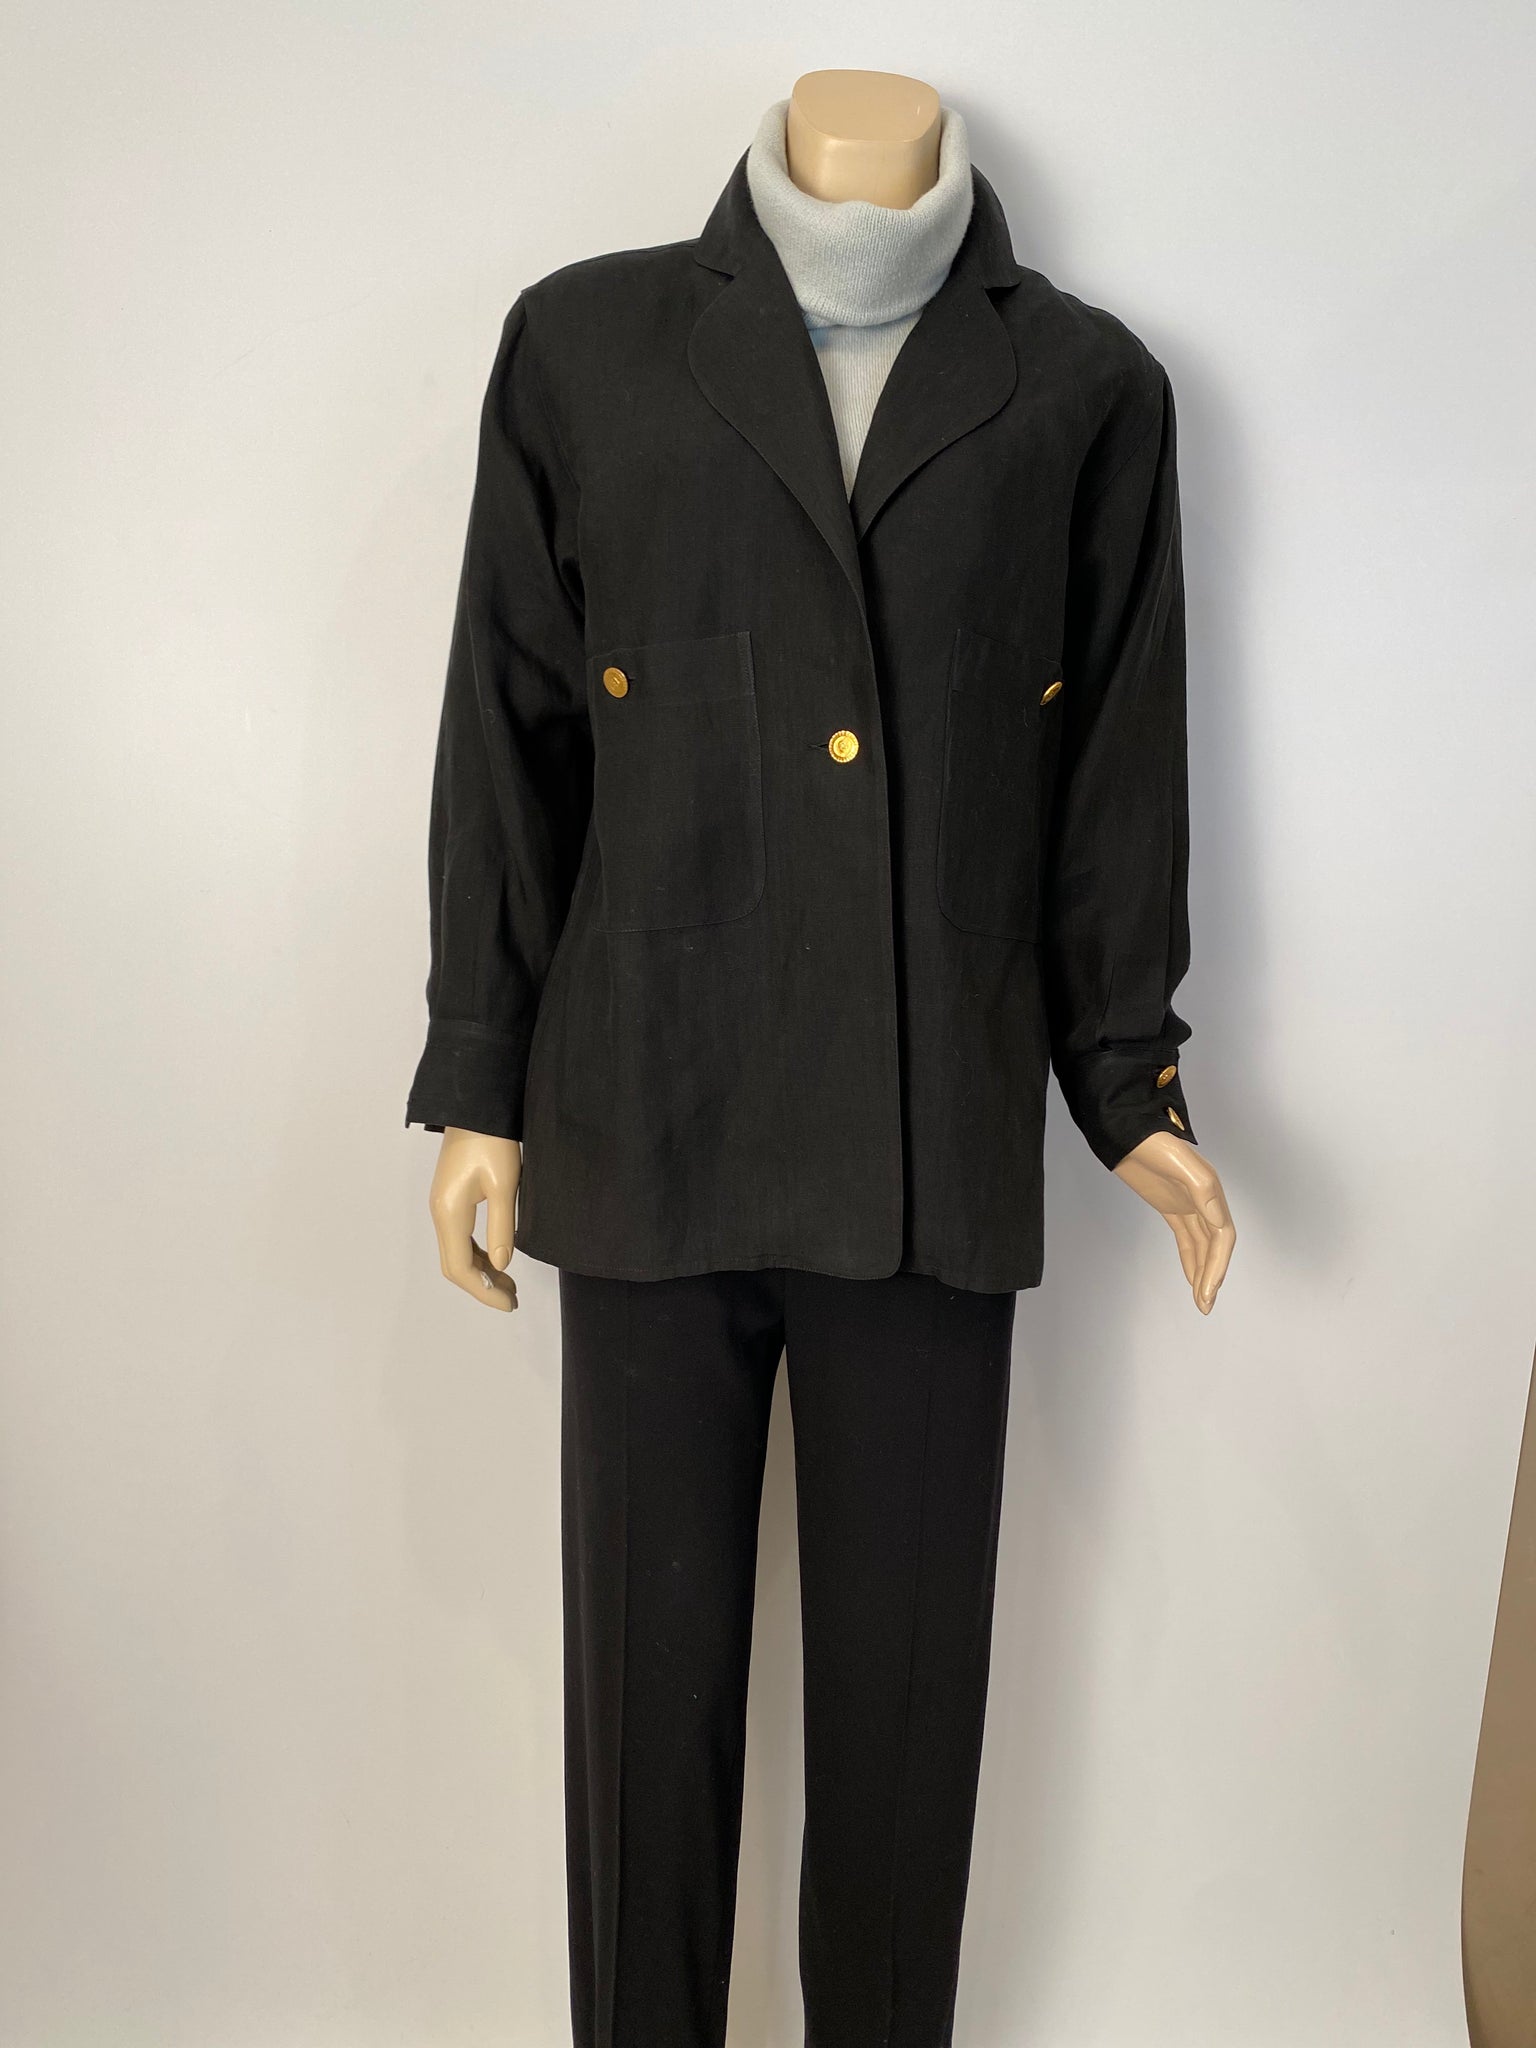 HelensChanel Rare Chanel Vintage 1980’s Black Jacket US 10/12